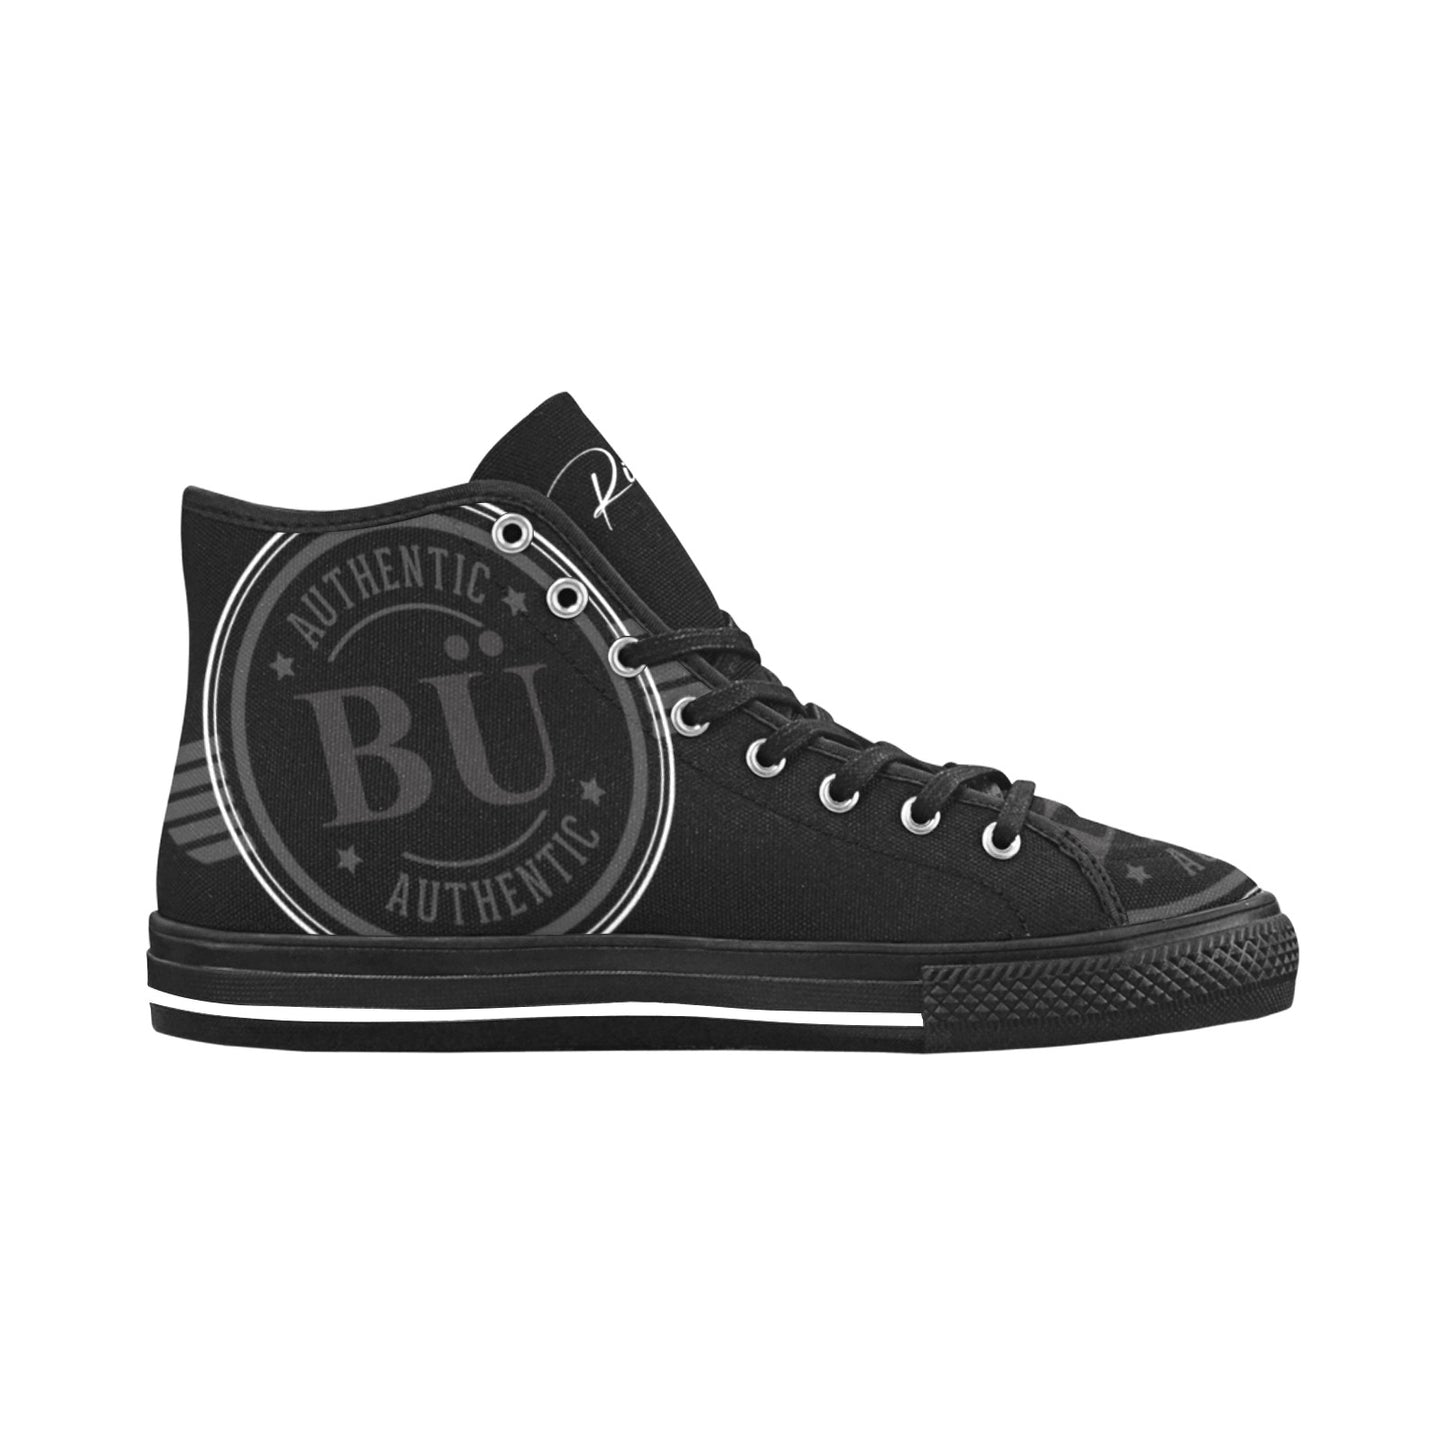 Be U Authentic - Black High Top Canvas Men's Shoes